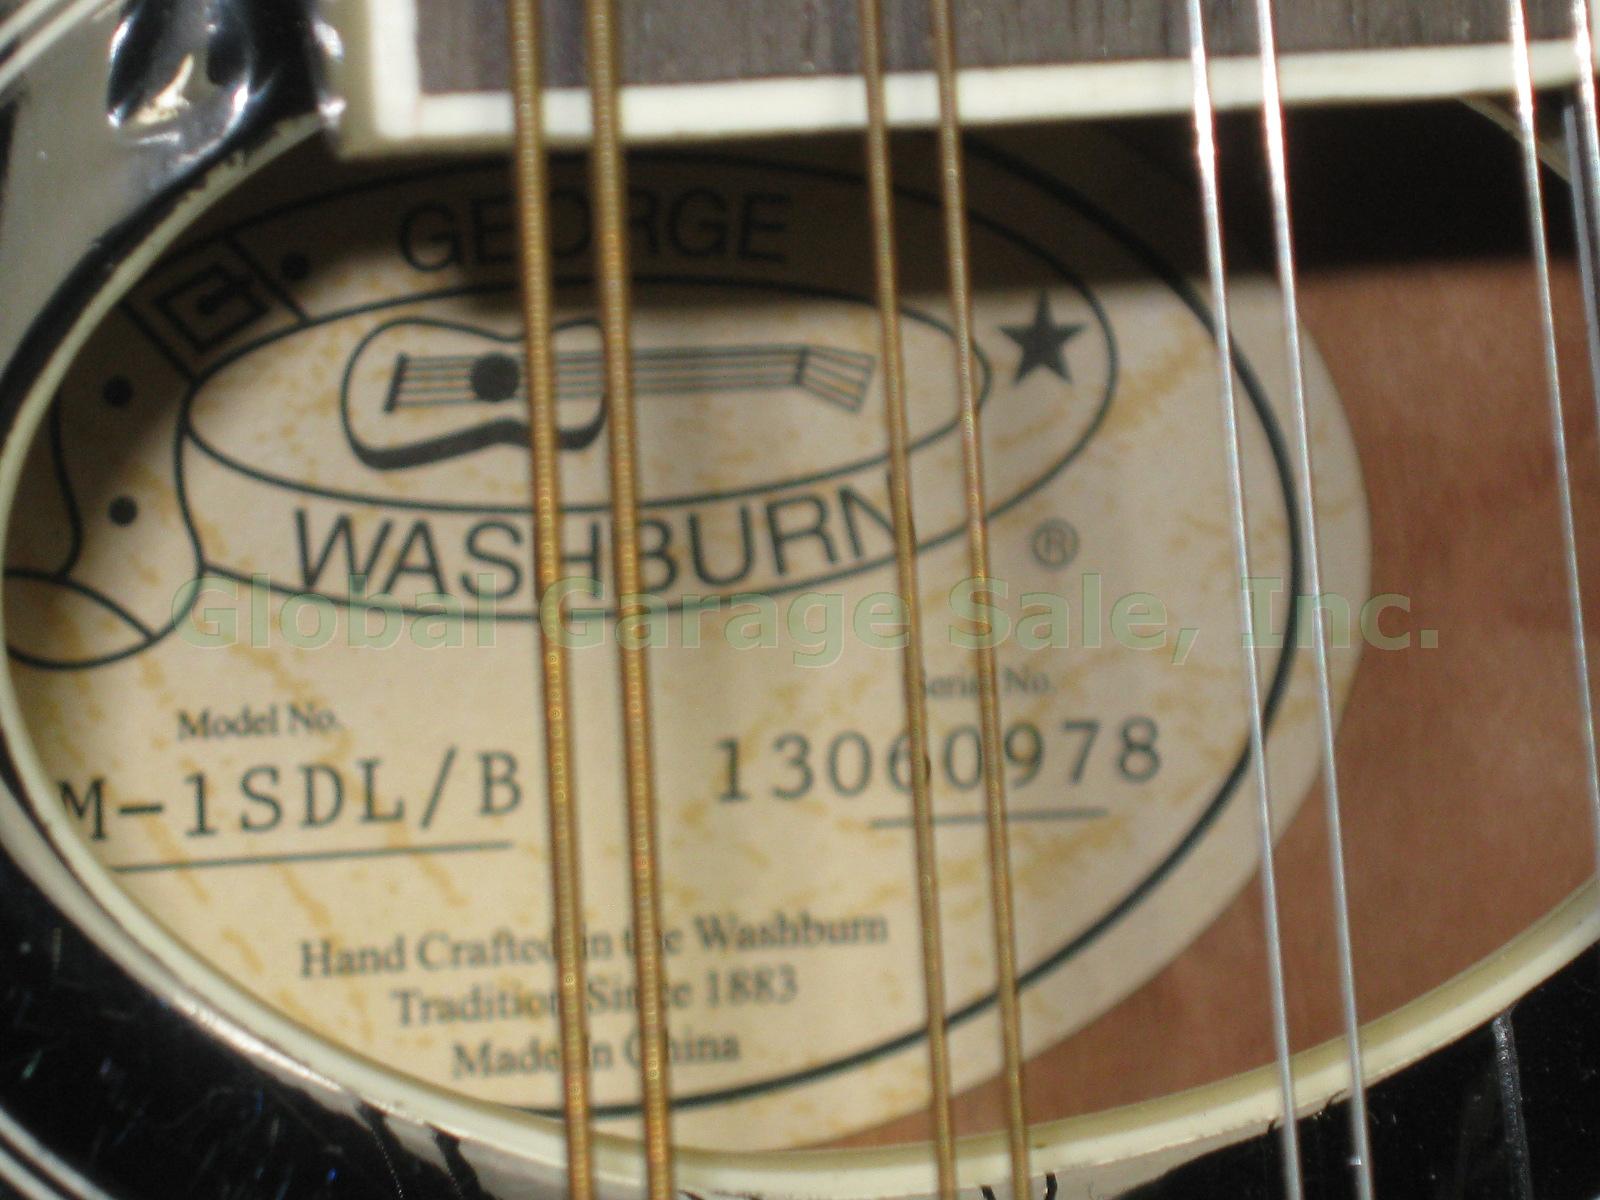 MINT! Washburn M-1SDL/B Mandolin + Road Runner Hardshell Case Hardly Played! 4